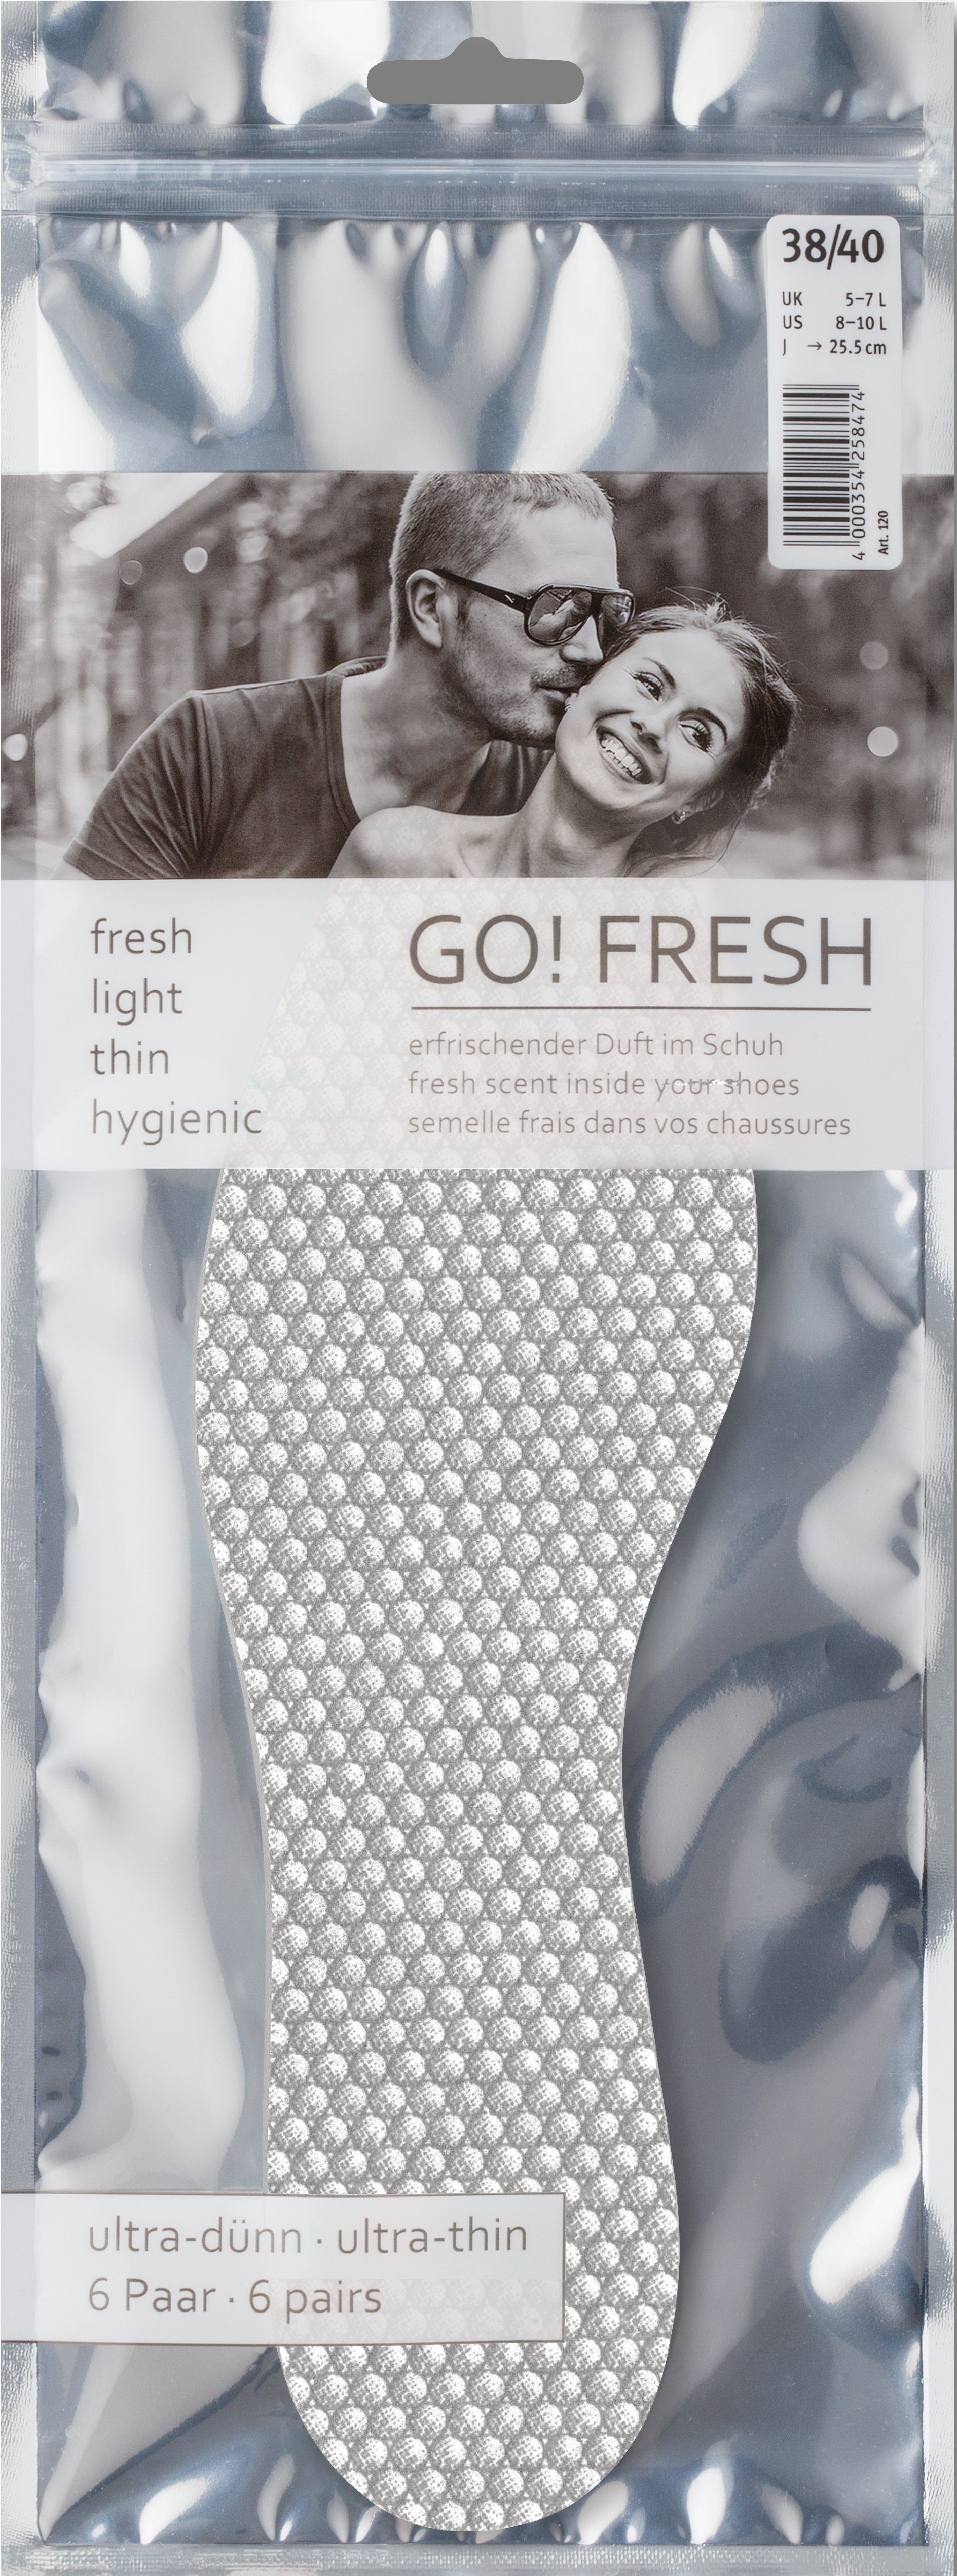 Pedag Frischesohlen GO! Fresh - Hygiene-Sohlen Ultra-dünne